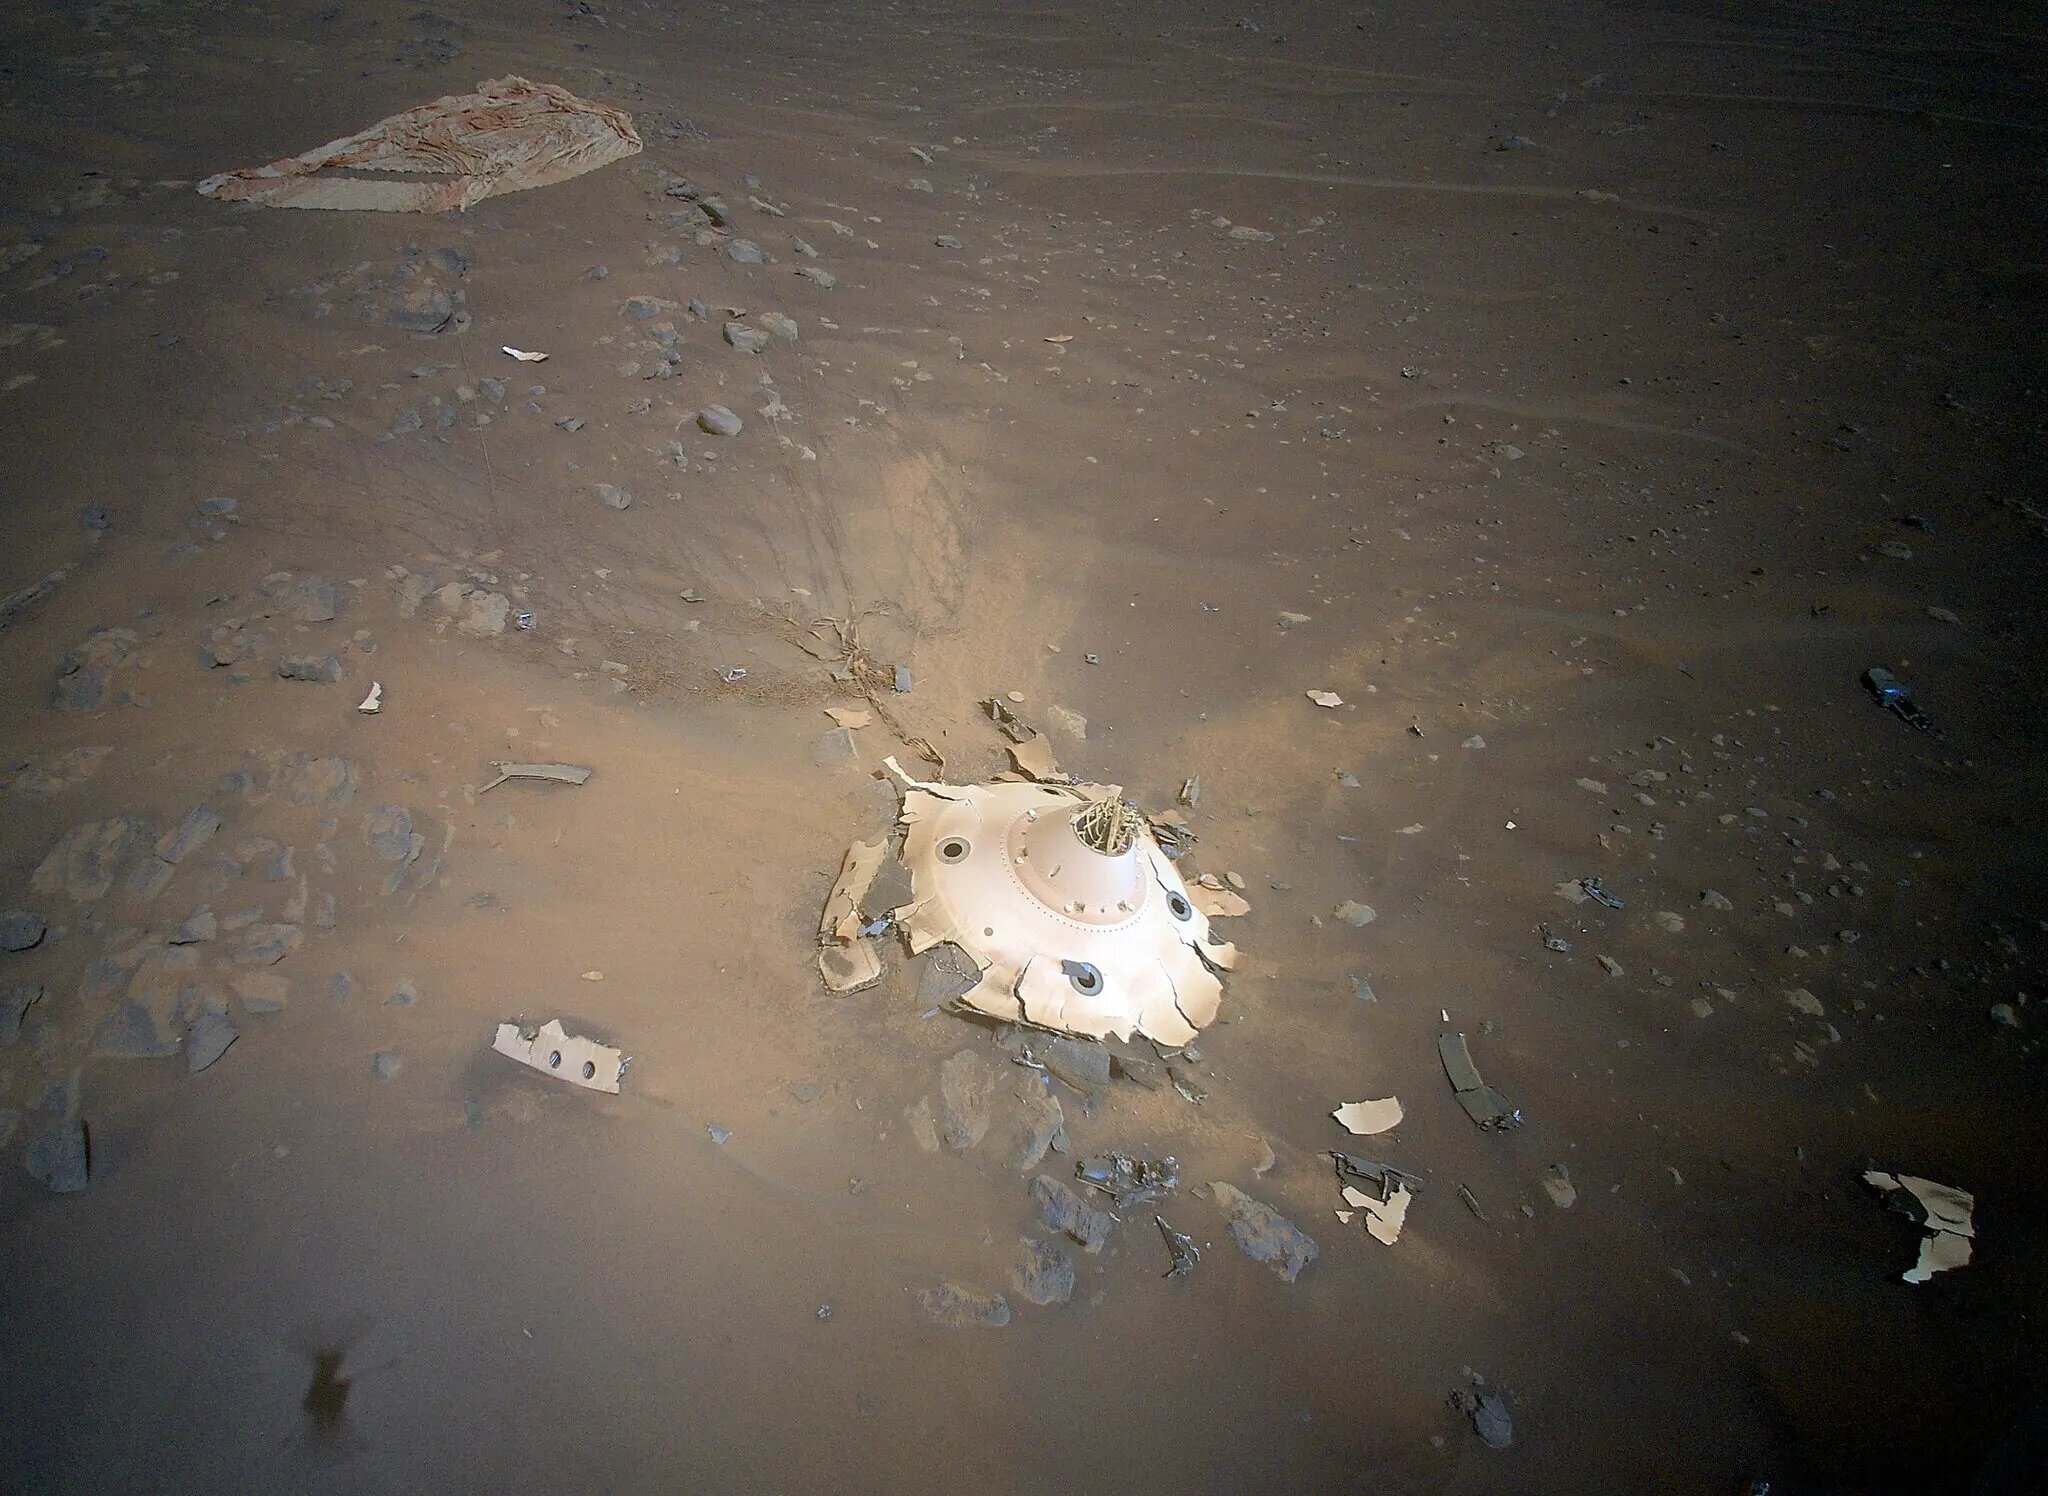 La NASA encuentra restos de una nave espacial destruida sobre la superficie  de Marte | National Geographic en Español